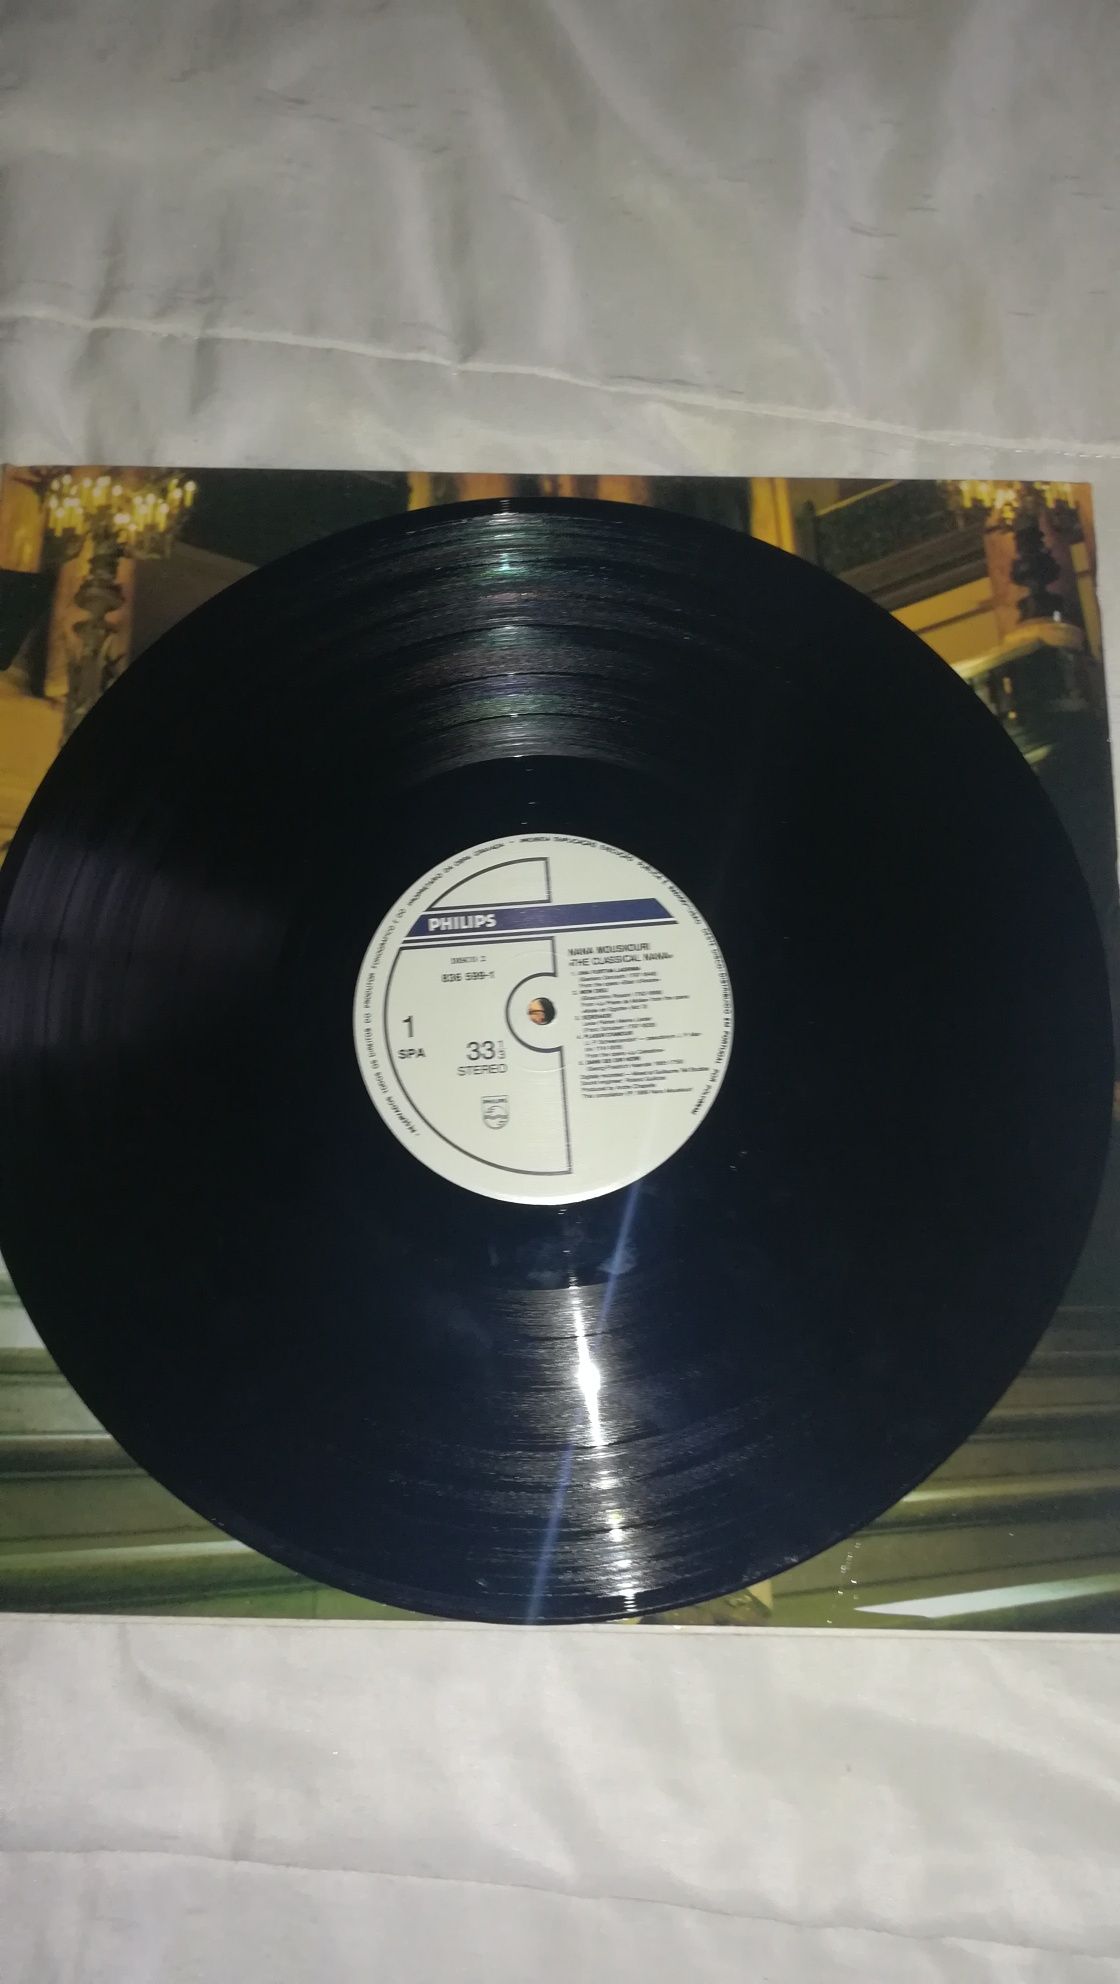 Disco Vinil / Vinyl 2 LP - Nana Mouskouri - Classical Nana 1989